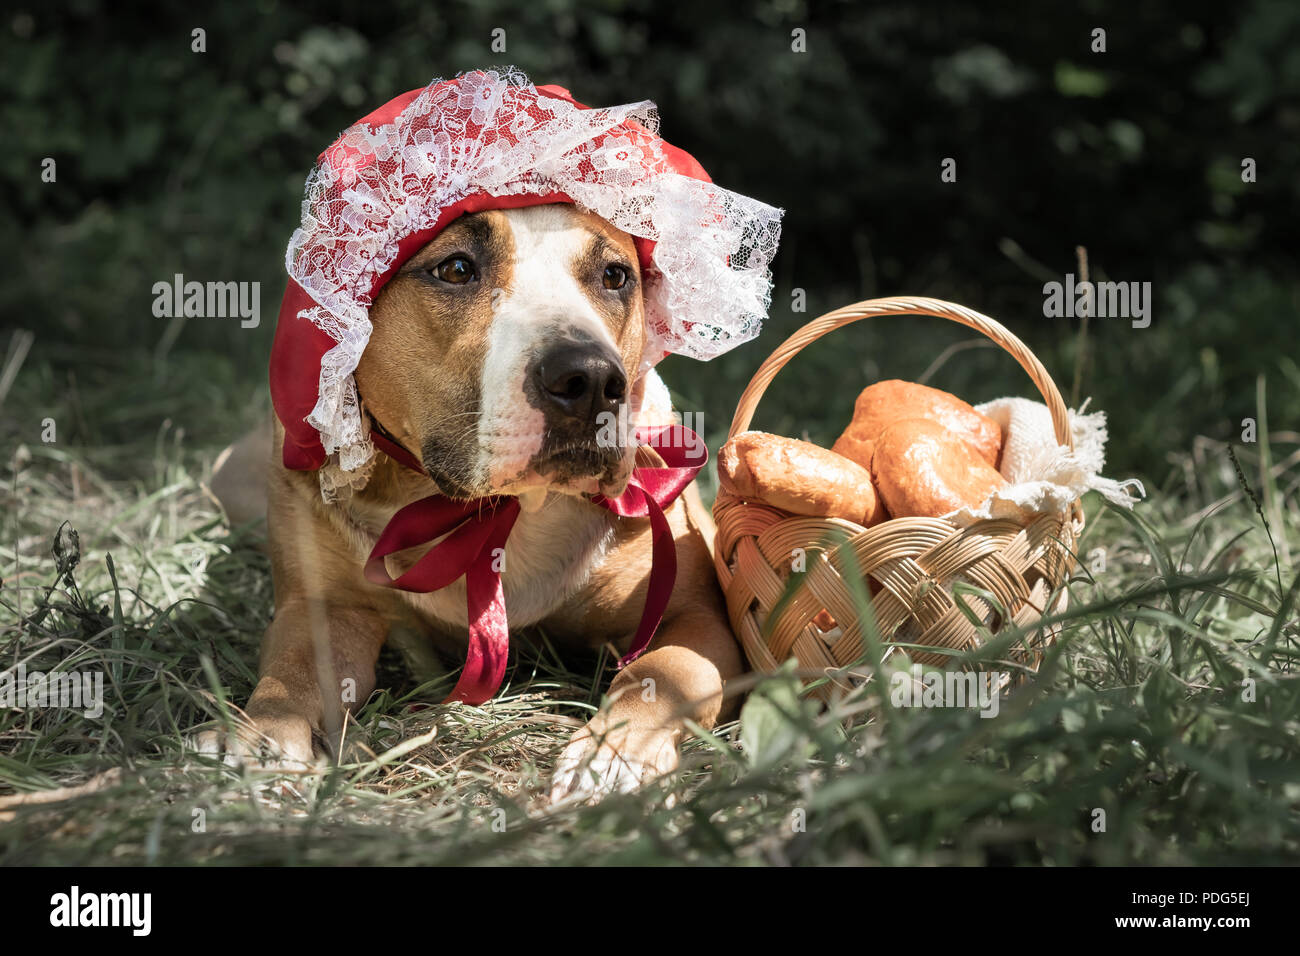 Schöner Hund im Halloween Märchen Kostüm der kleine rote Kappe. Portrait von cute puppy posiert in Red Riding hoold Gap und Korb mit Gebäck in Grün Stockfoto